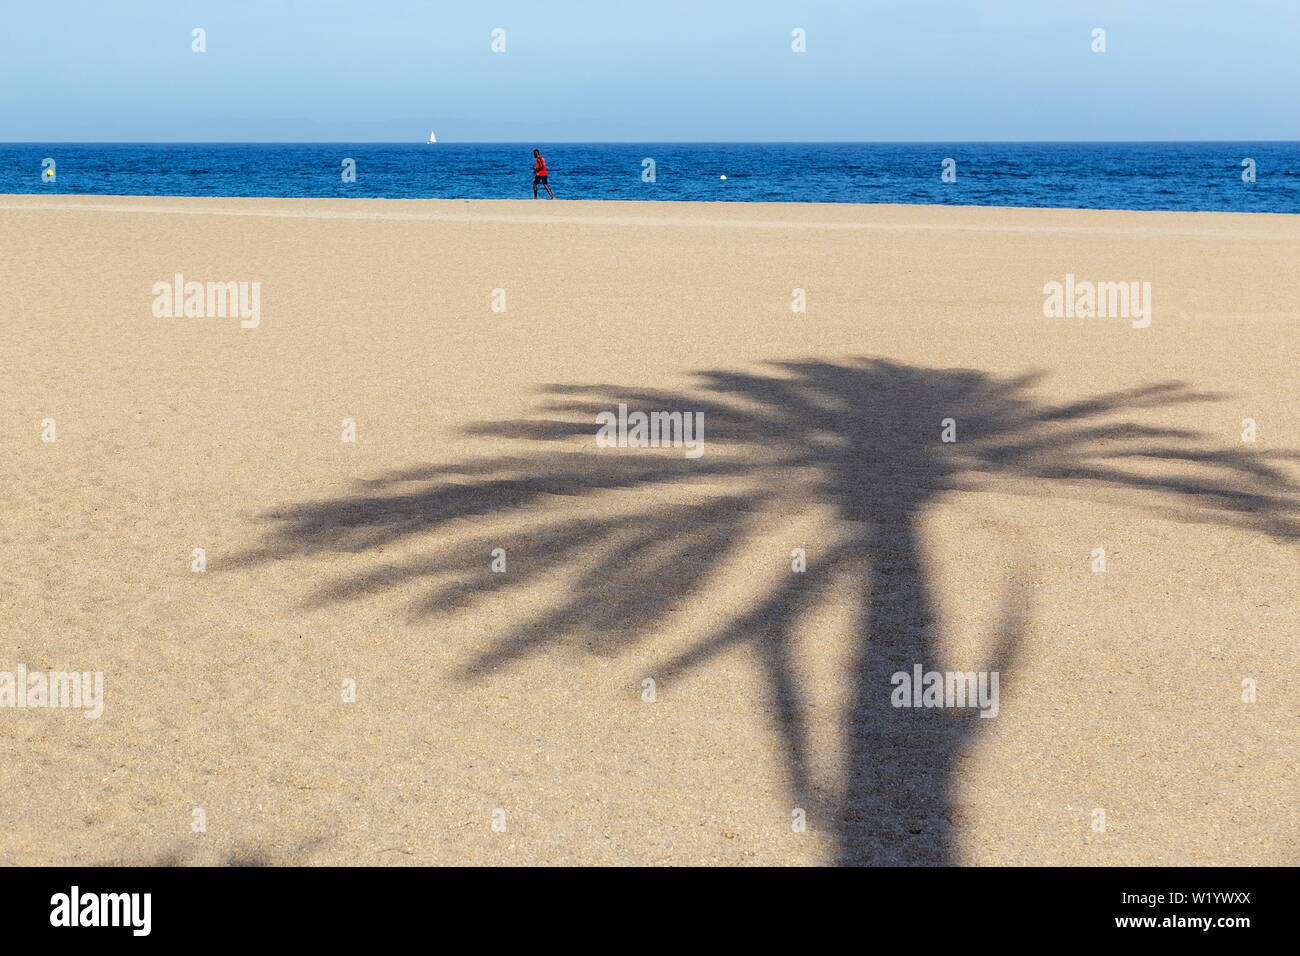 Ombre de palmier dans le sable sur la plage en Espagne. Homme africain marche dans la distance près de la mer. Banque D'Images